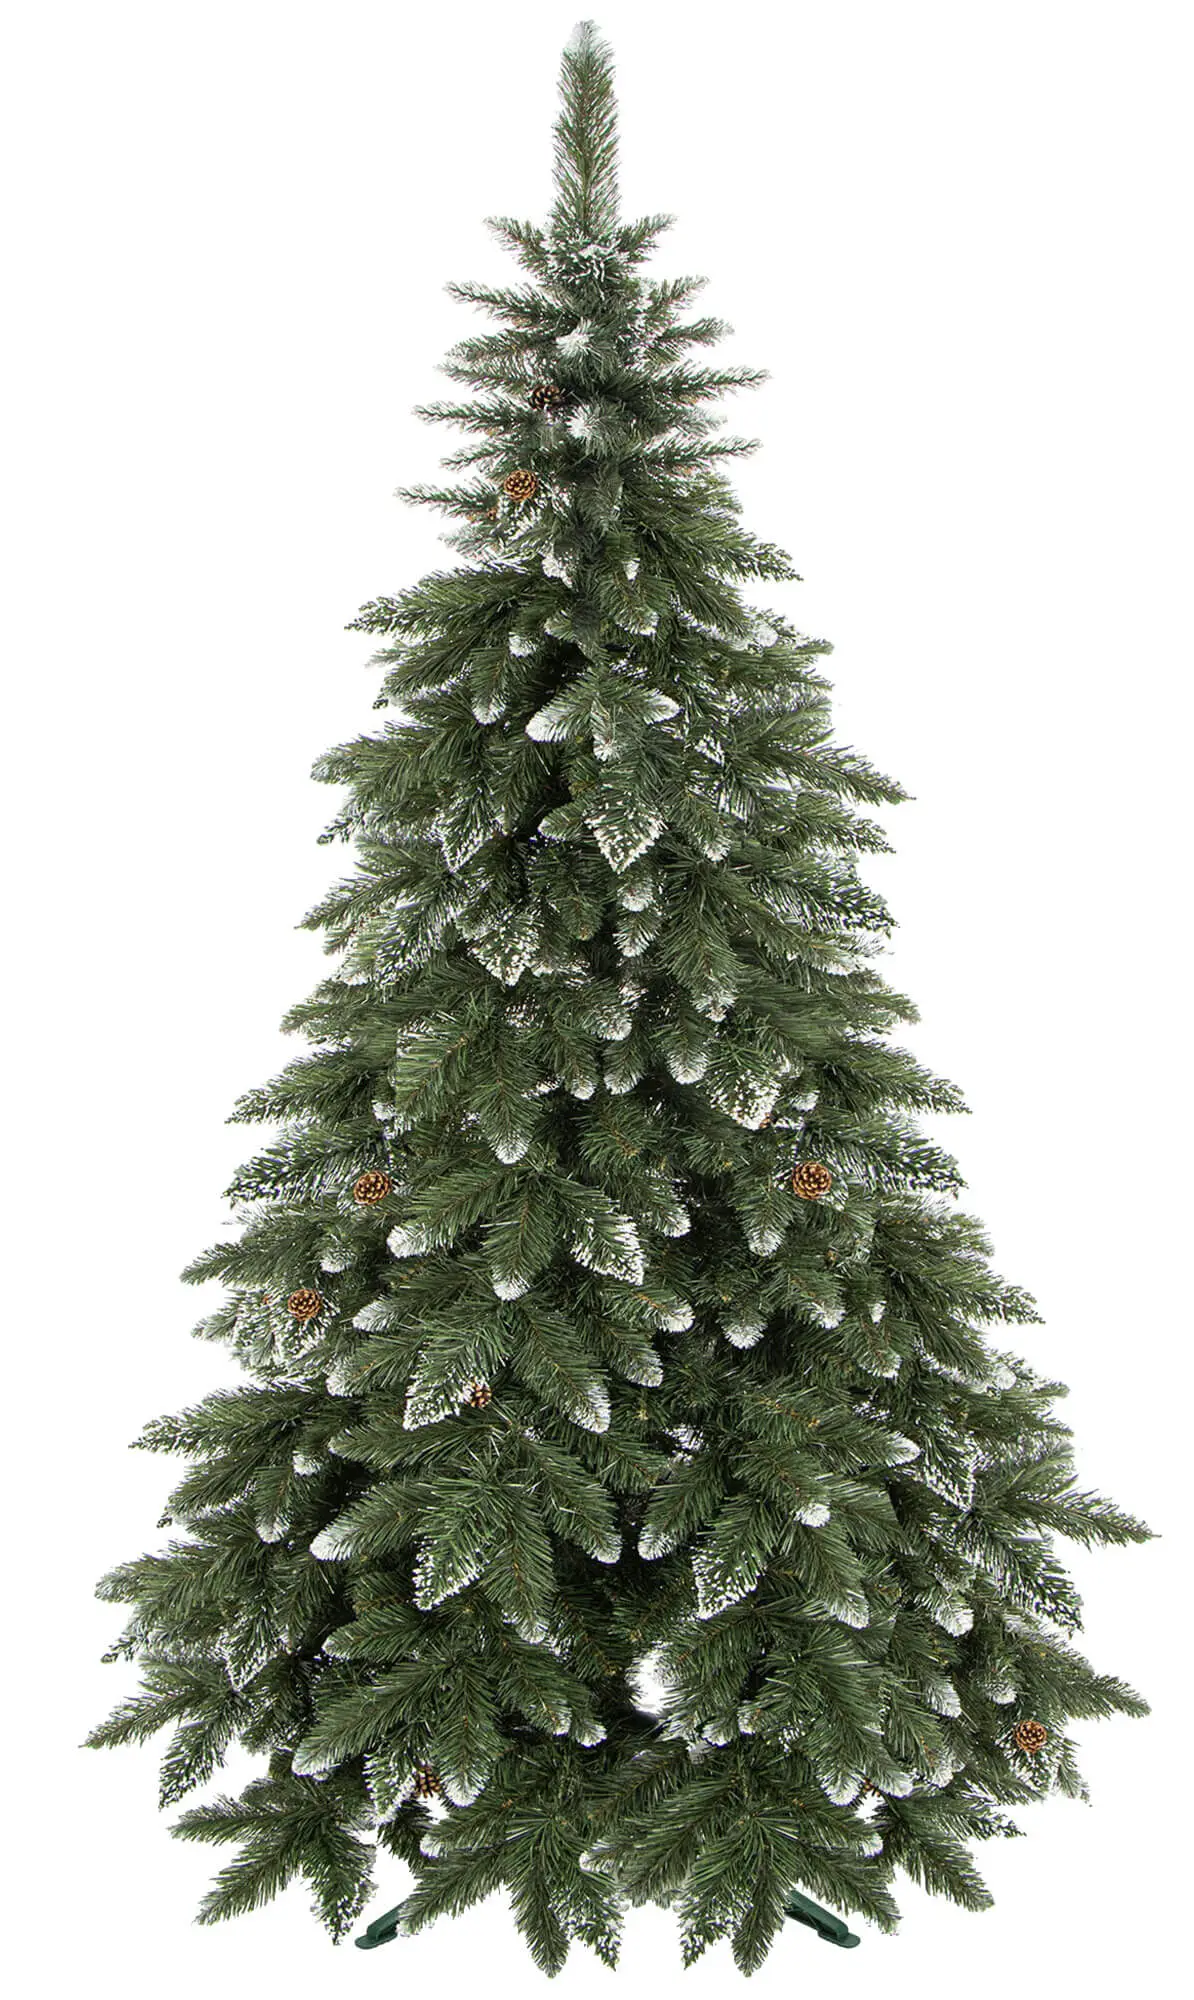 K眉nstlicher Weihnachtsbaum 180 cm | Weihnachtsbäume